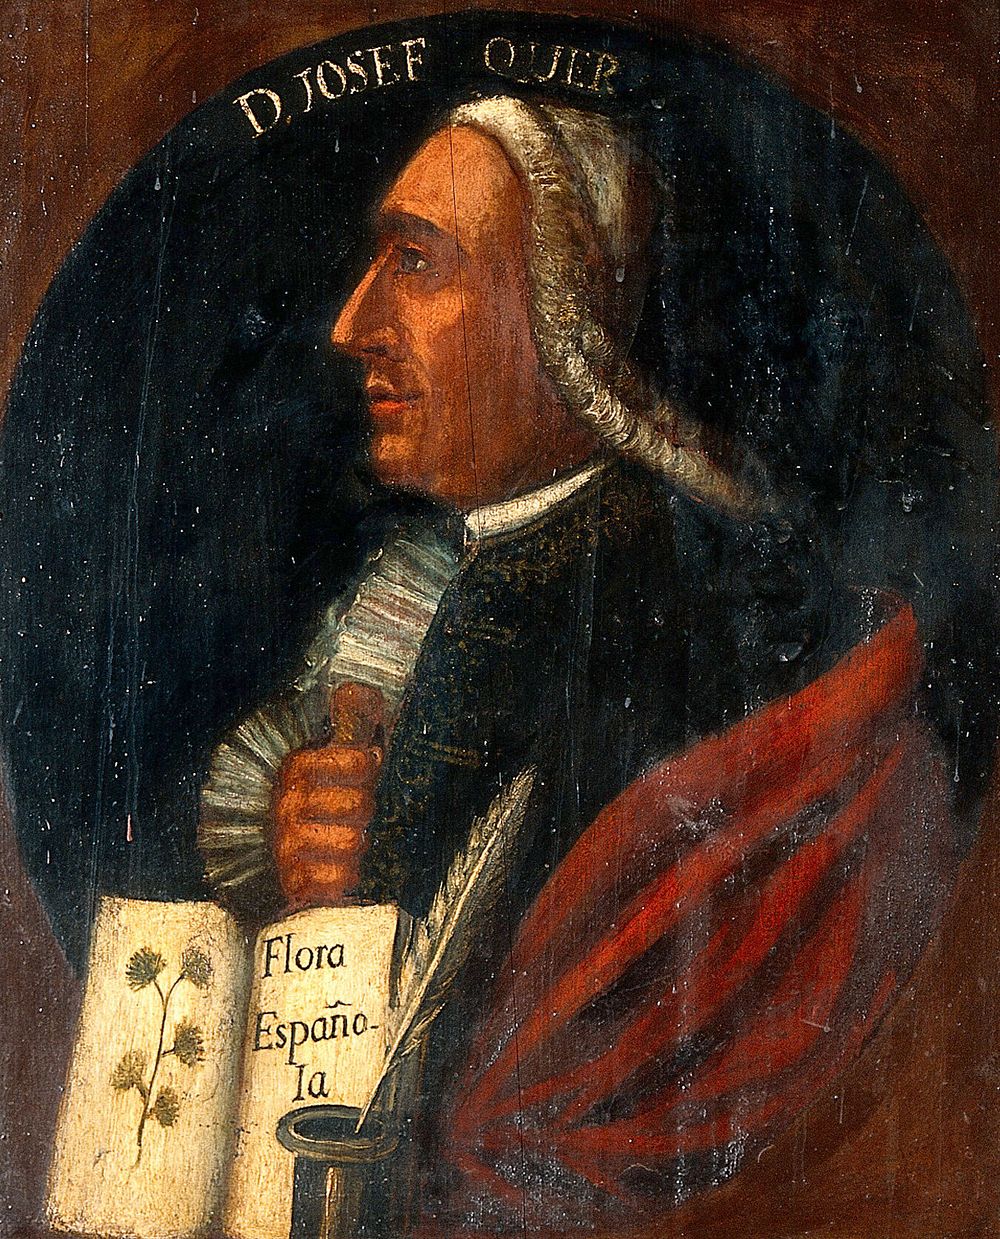 José Quer y Martínez (1695-1764). Oil painting.